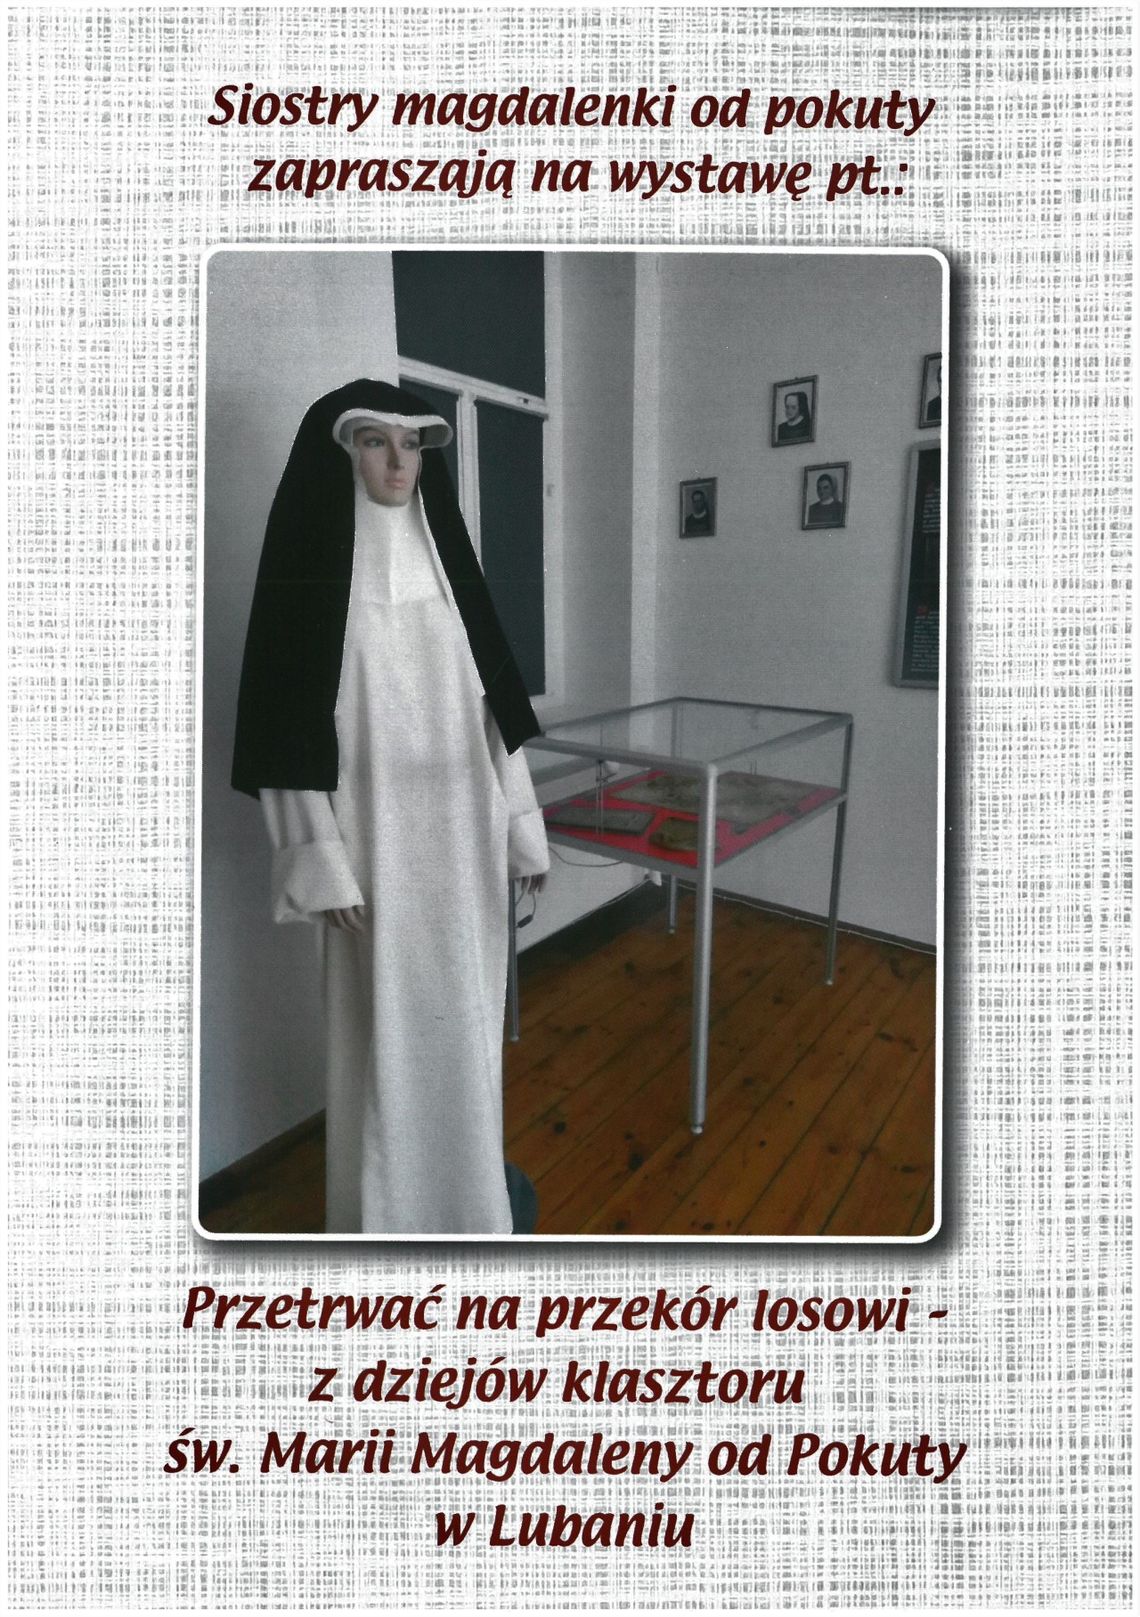 Przetrwać na przekór losowi - z dziejów klasztoru św. Marii Magdaleny od Pokuty w Lubaniu